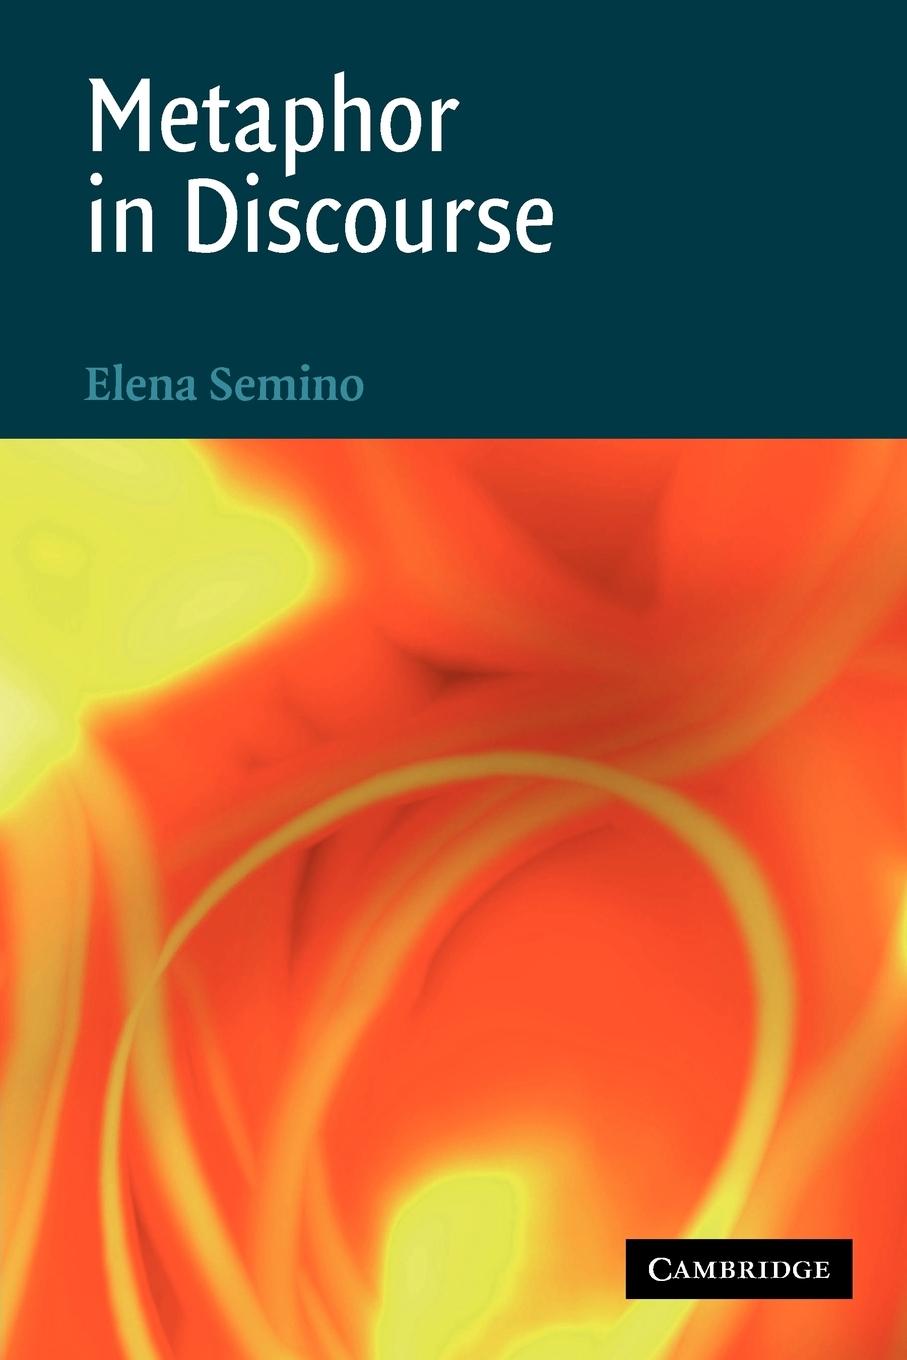 Metaphor in Discourse / Elena Semino / Taschenbuch / Paperback / Englisch / 2011 / Cambridge University Press / EAN 9780521686969 - Semino, Elena